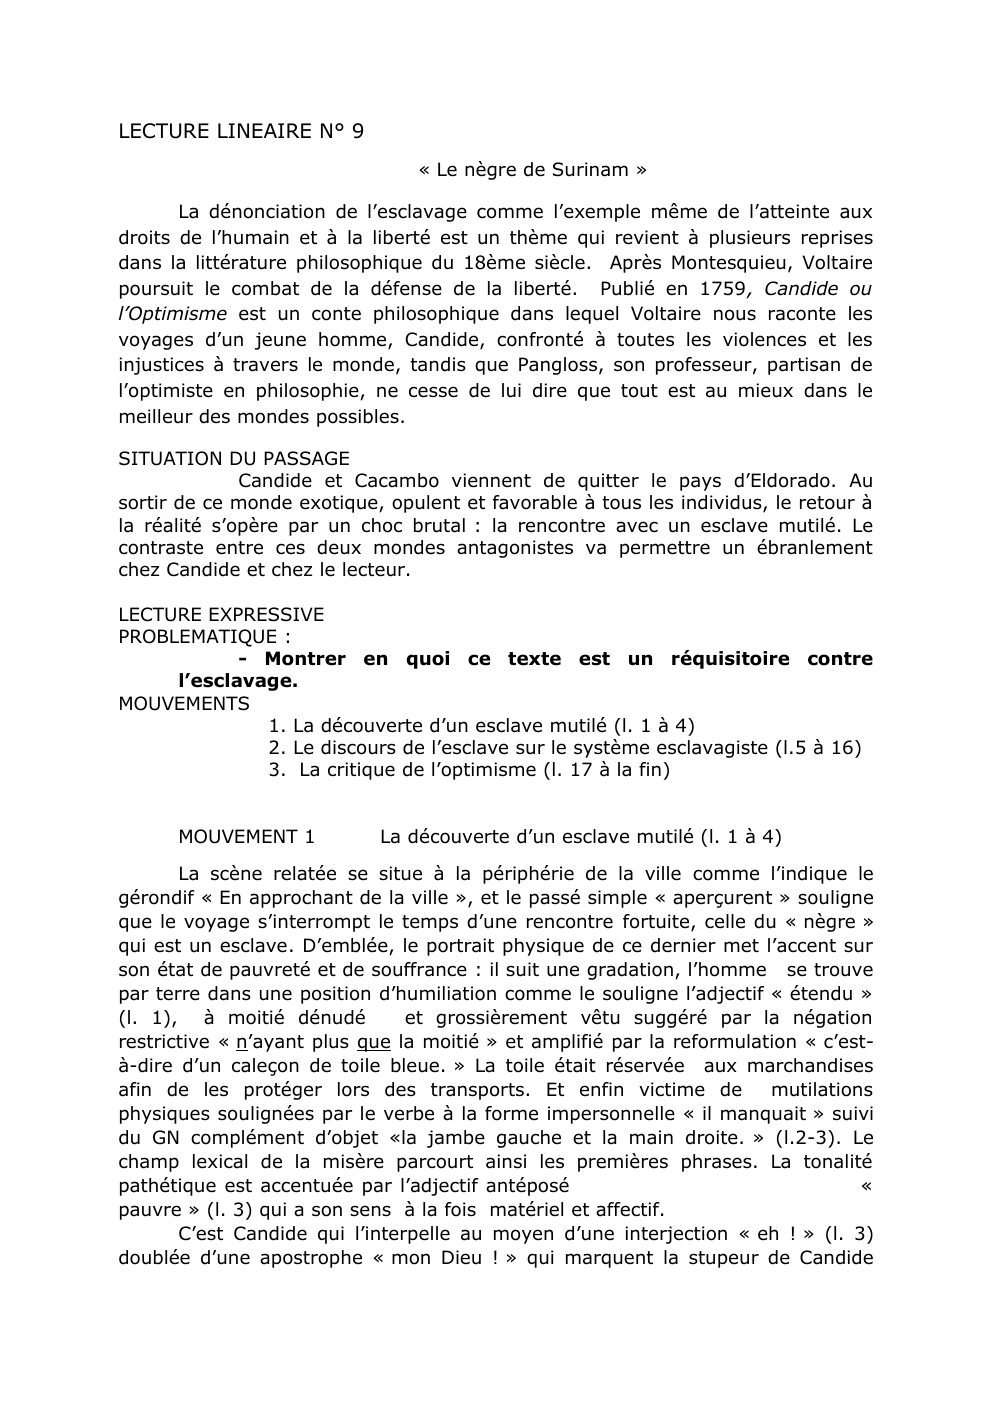 Prévisualisation du document explication linéaire du nègre de surinam